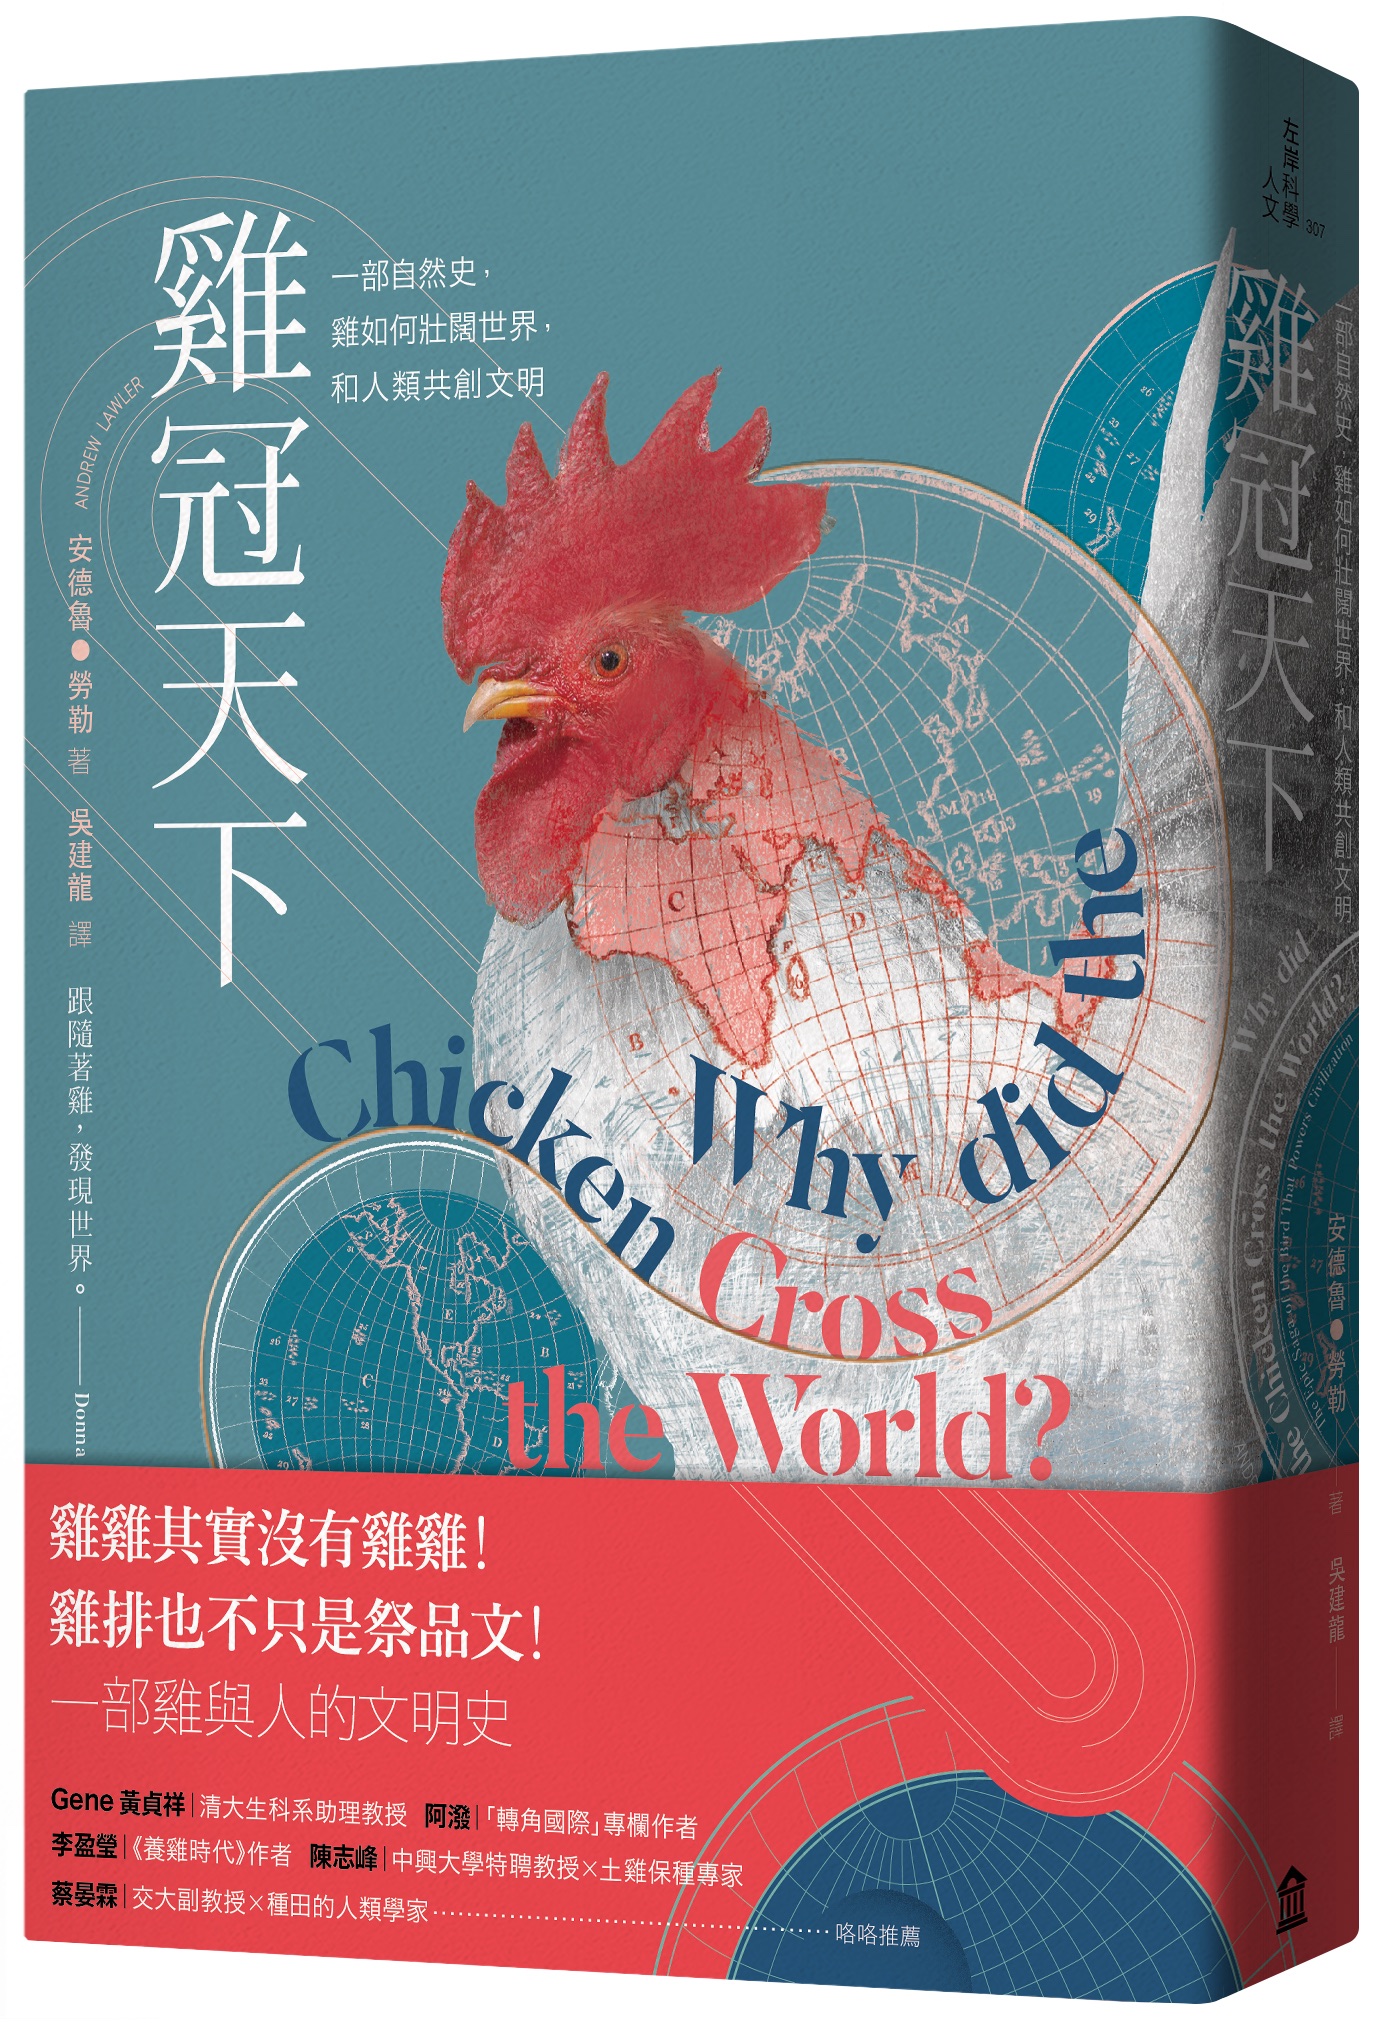 《雞冠天下》中文版書封。